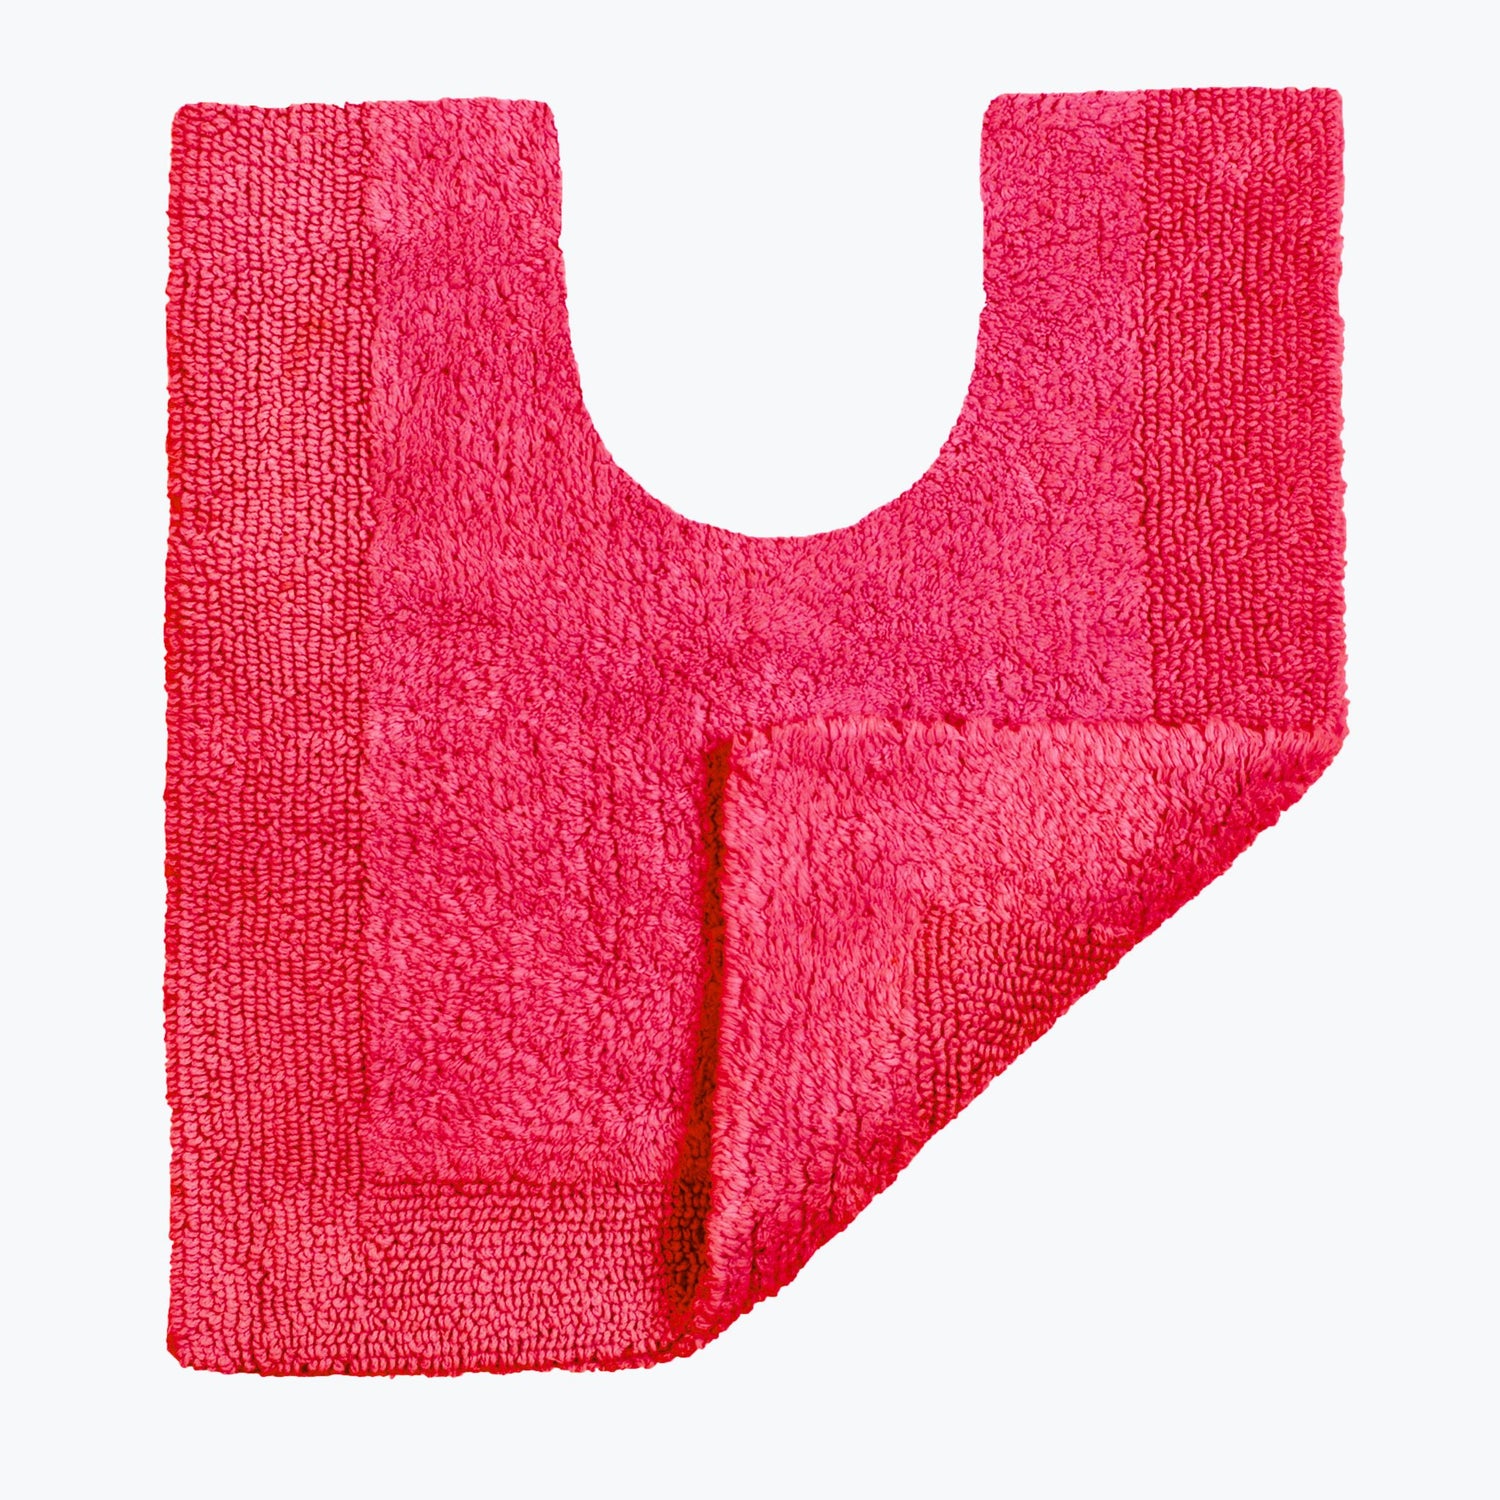 Hot Pink Reversible Toilet Mat - Super Soft Cotton Pedestal Mat